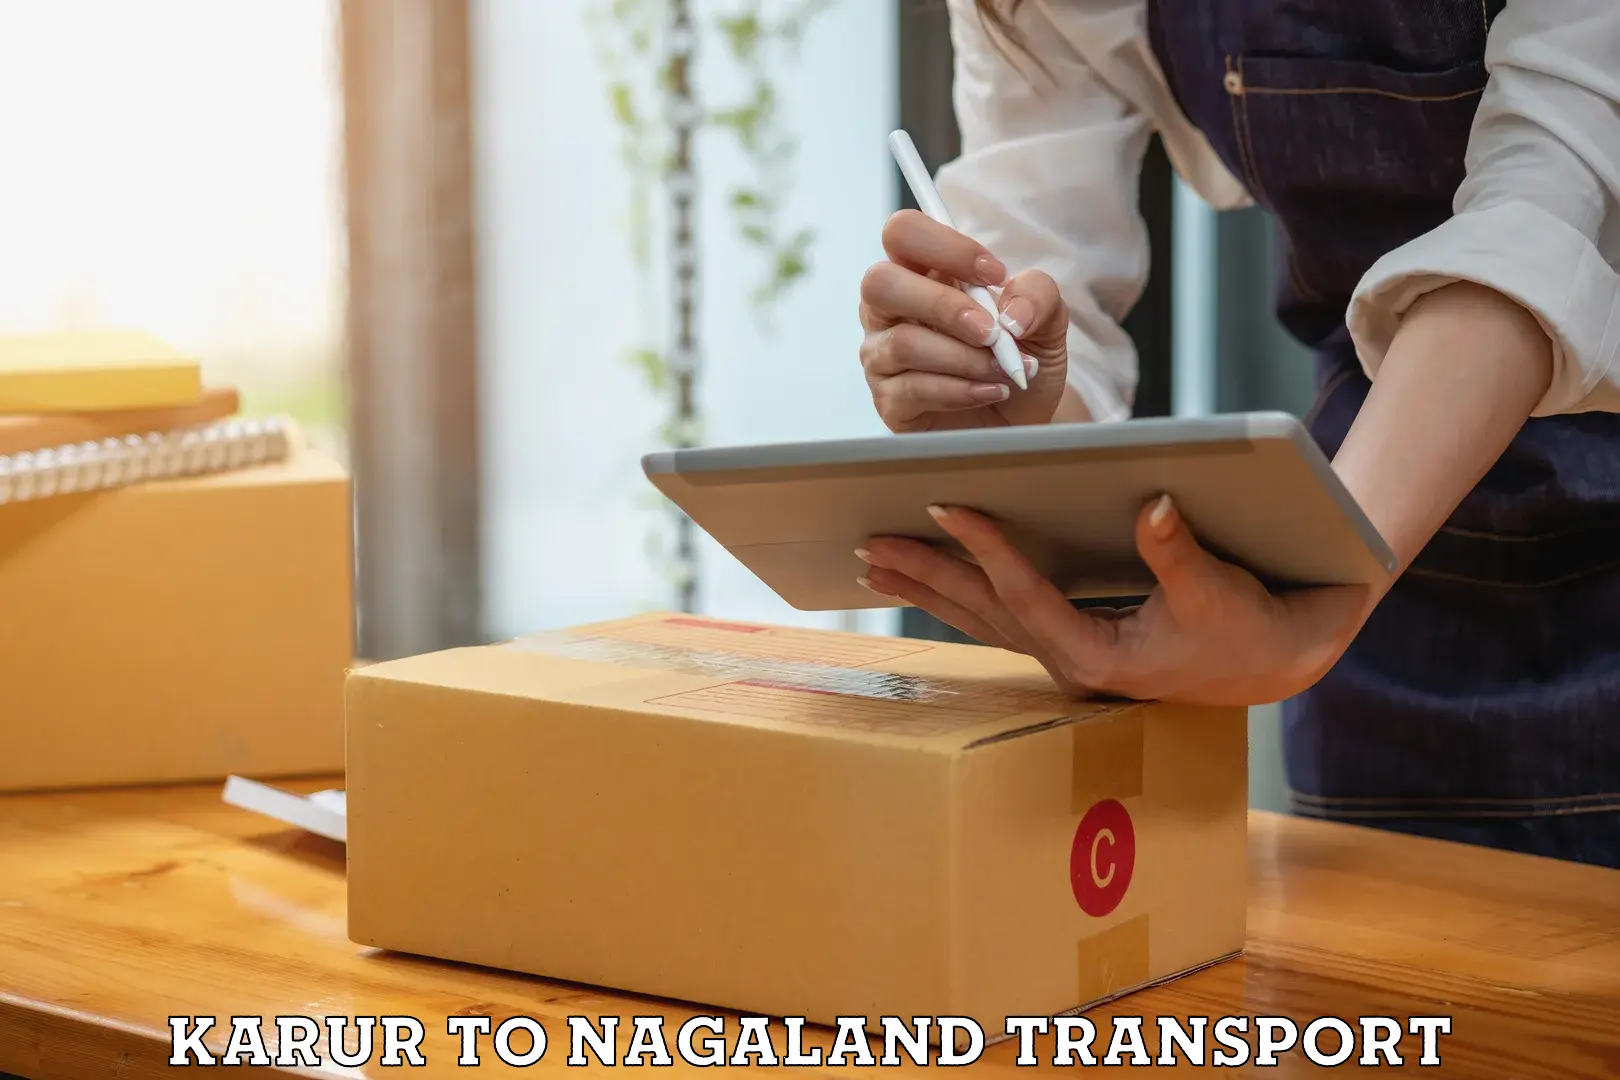 Nationwide transport services Karur to Nagaland